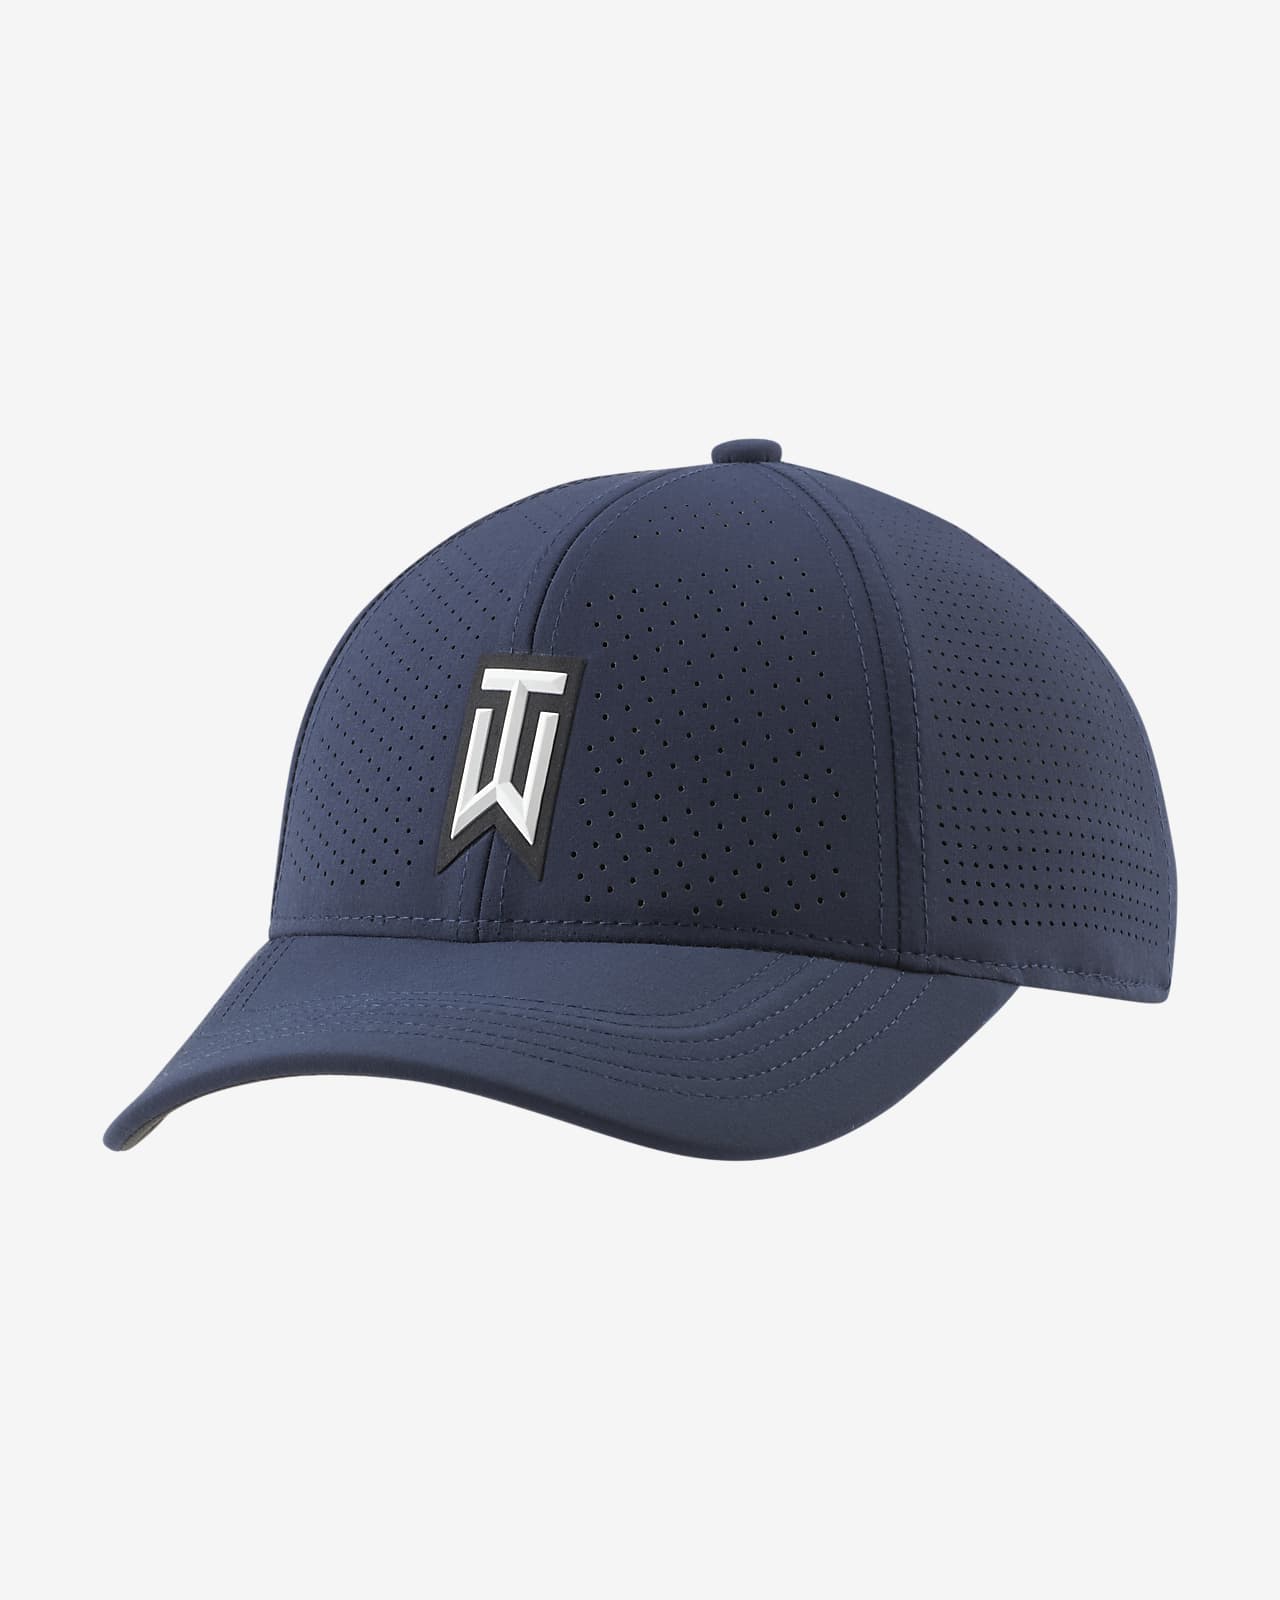 tiger woods blue hat